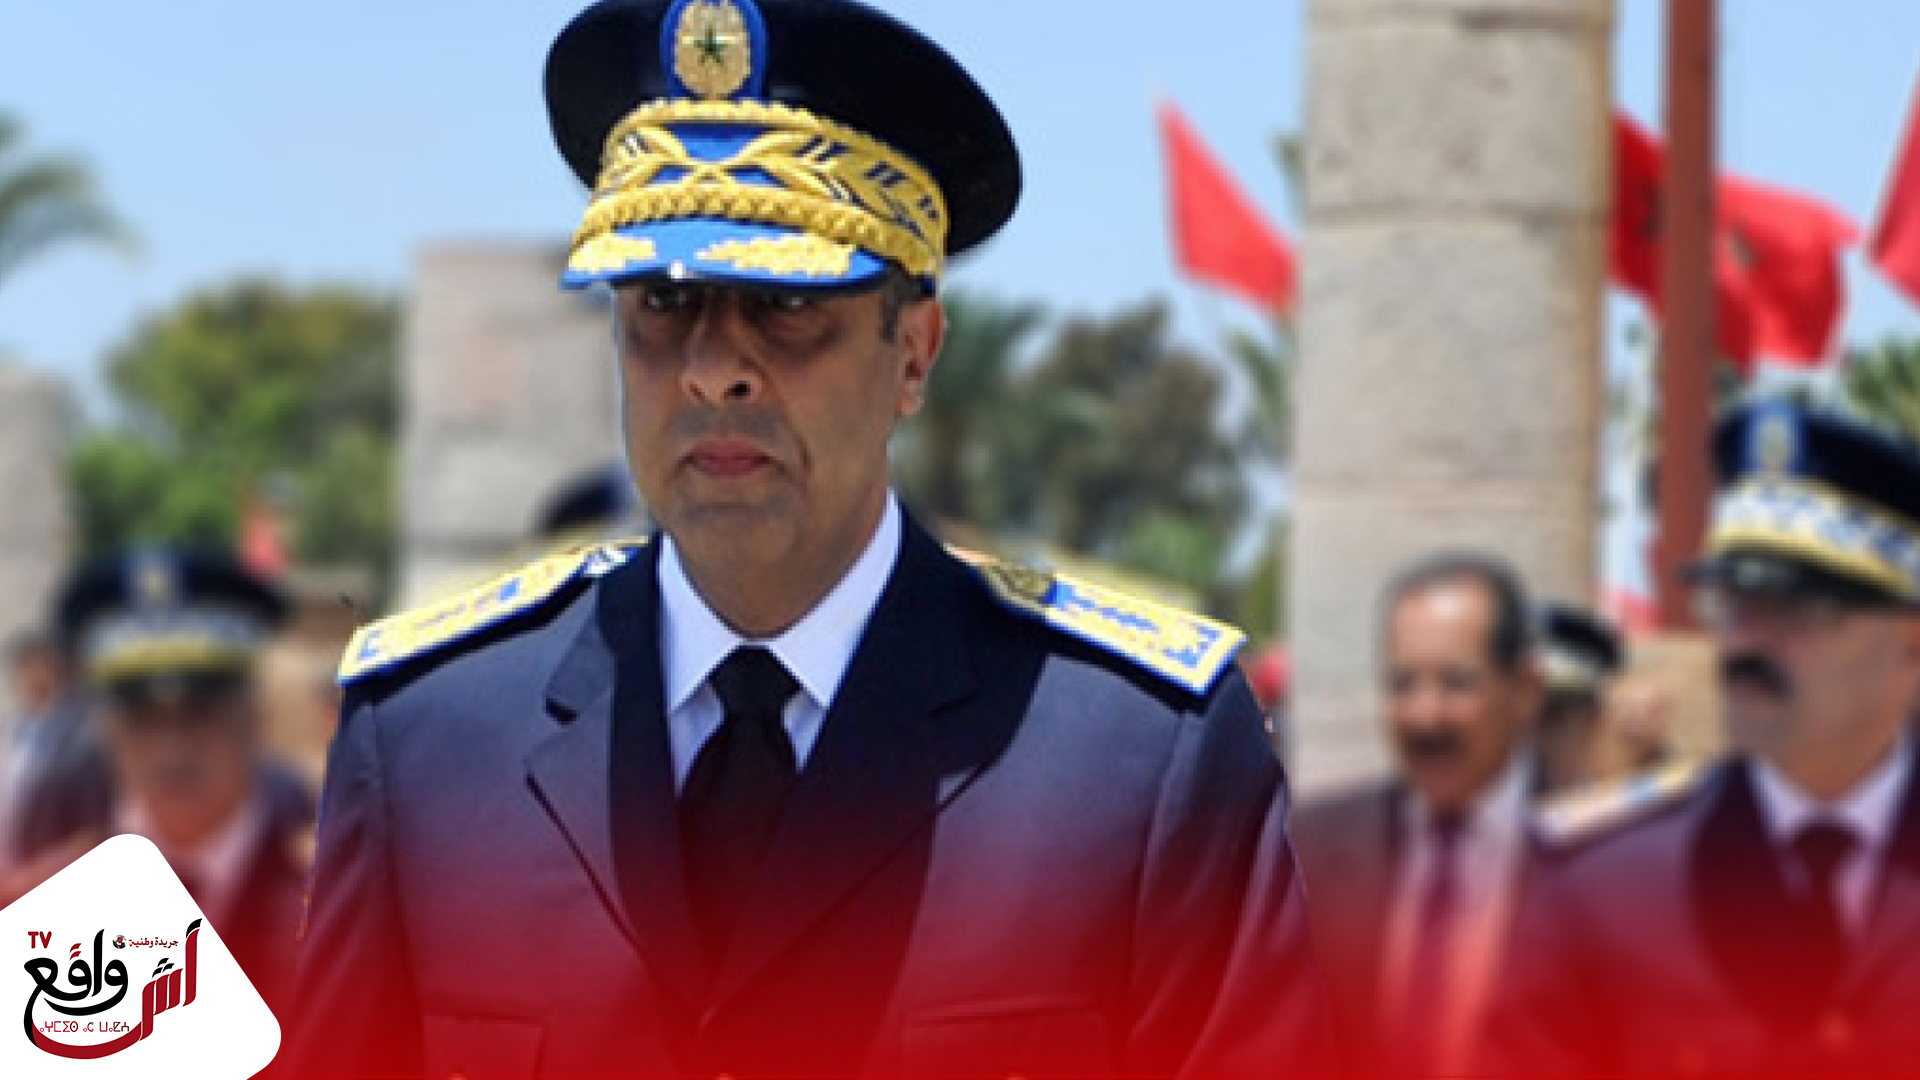 الحموشي يصدر قرارات بتعيينات جديدة في مناصب المسؤولية